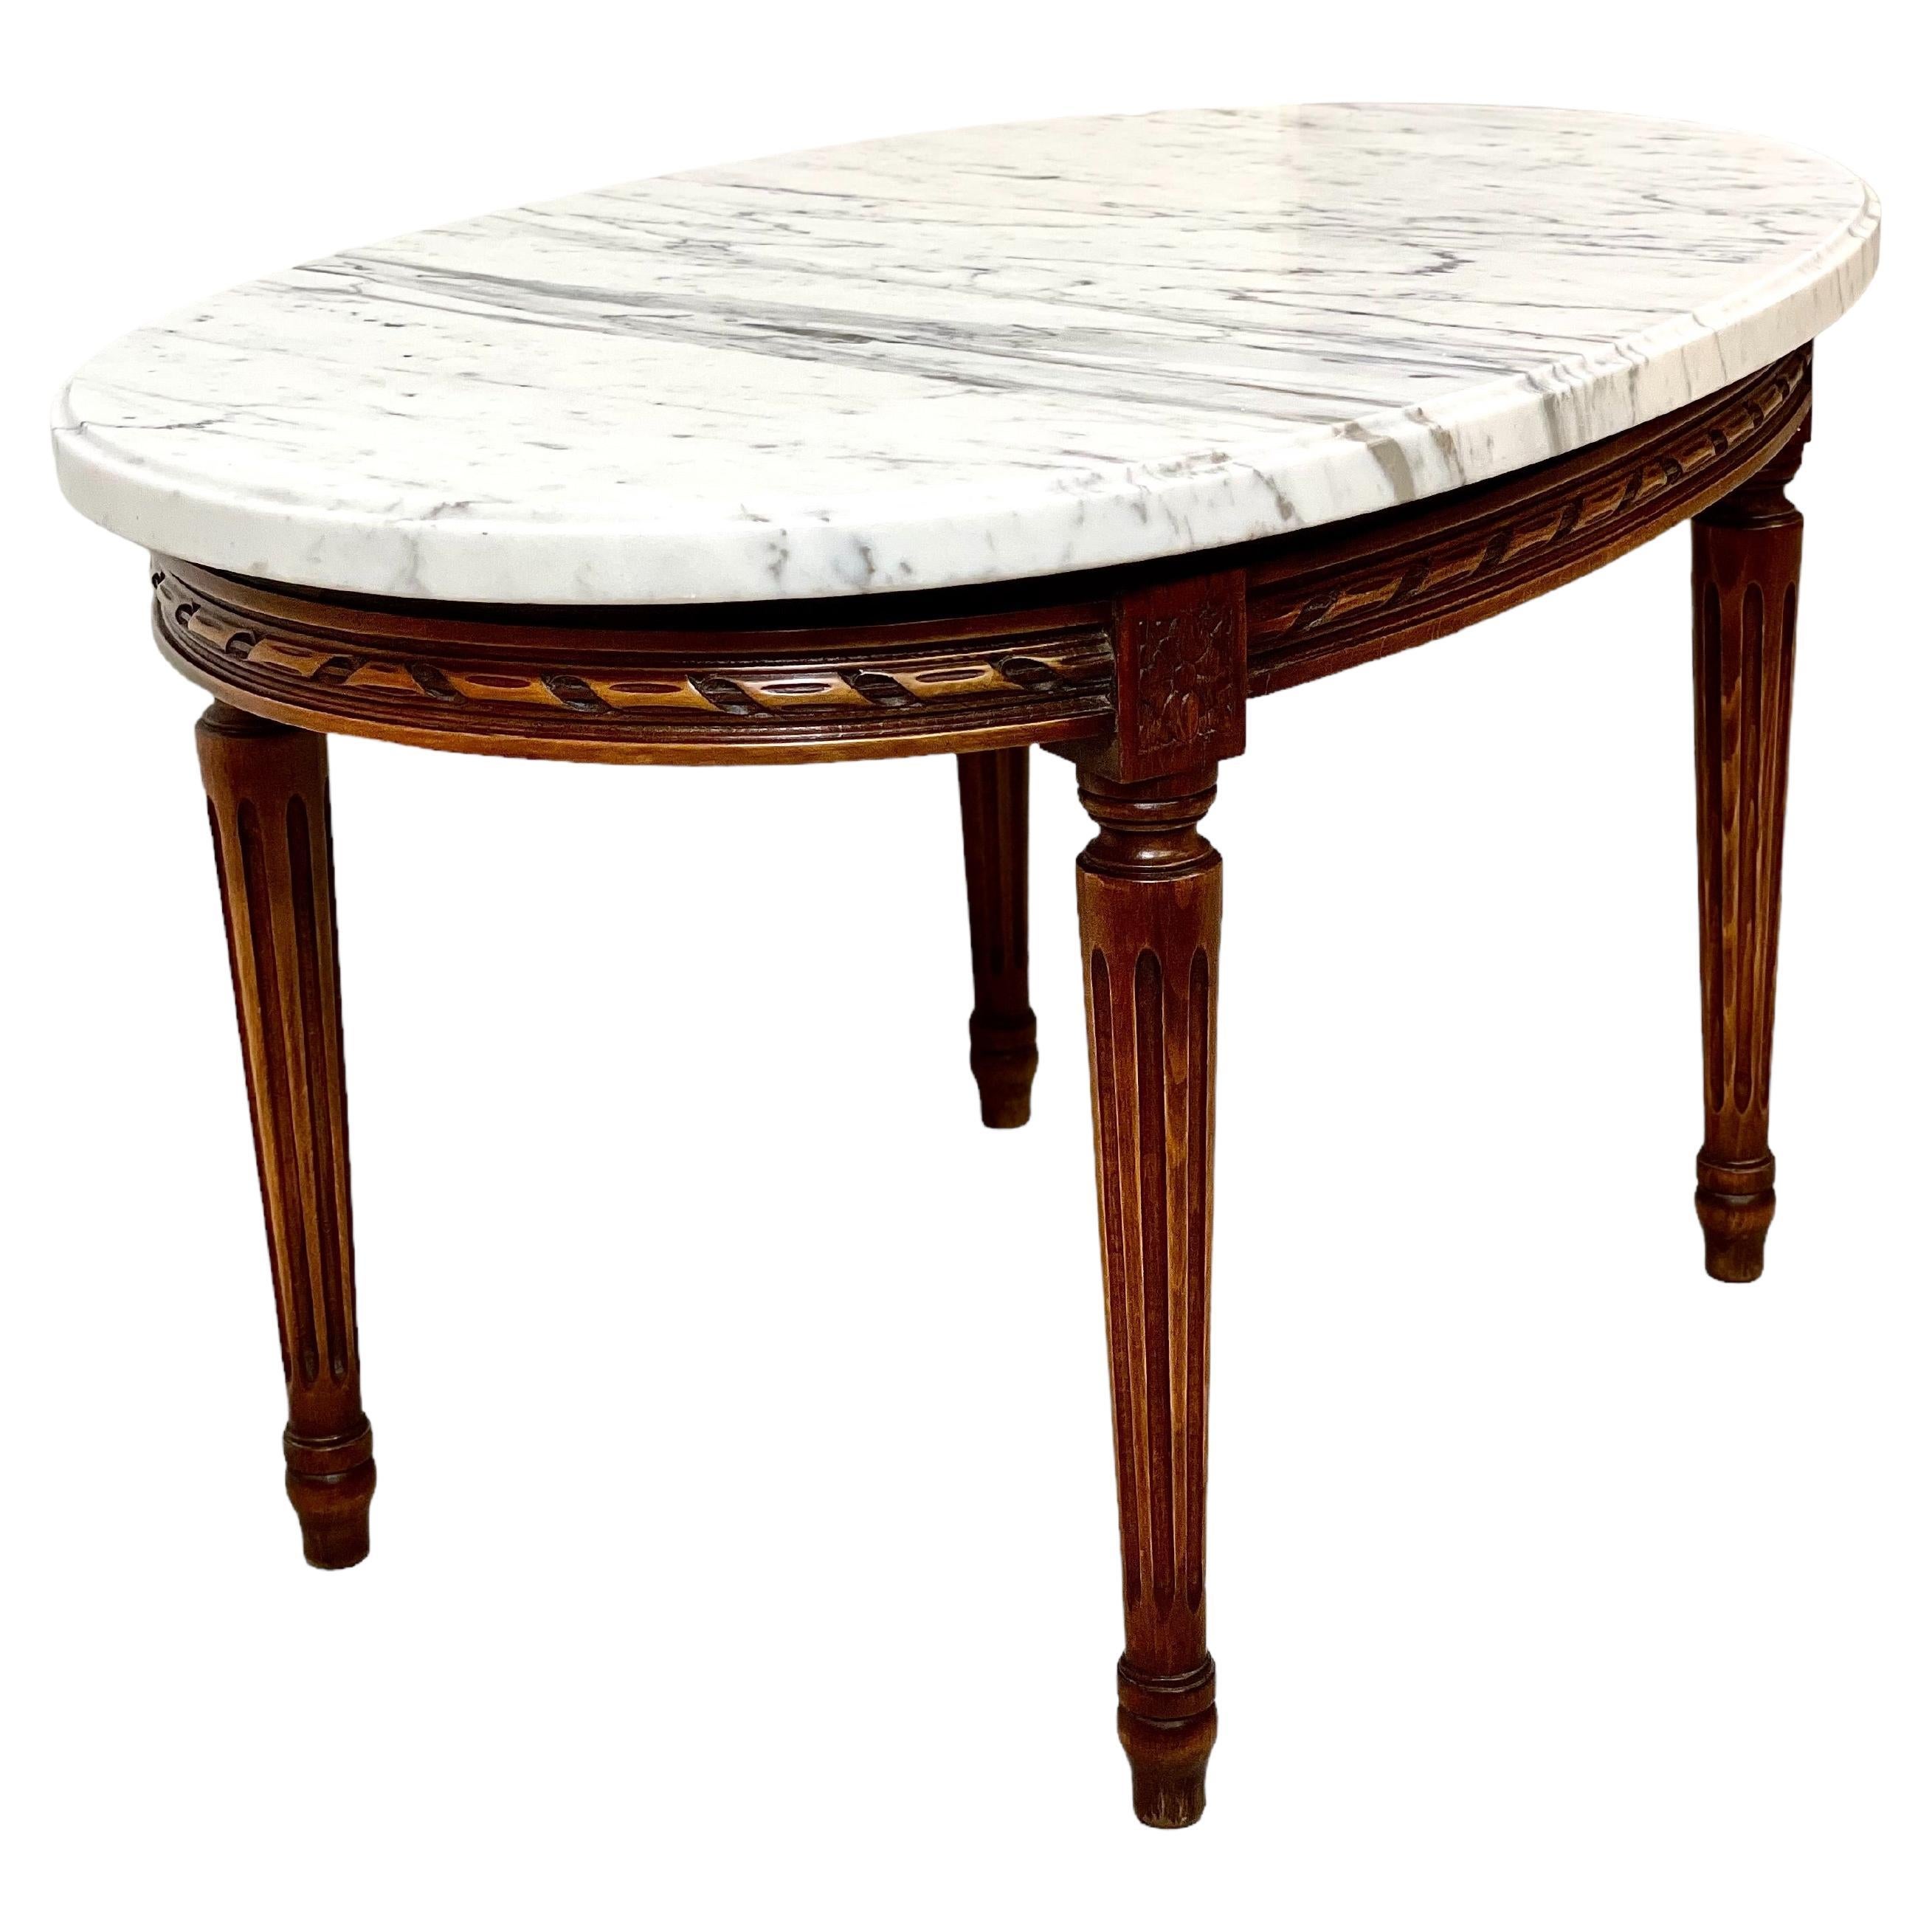 Table basse ovale de style Louis XVI surmontée de marbre